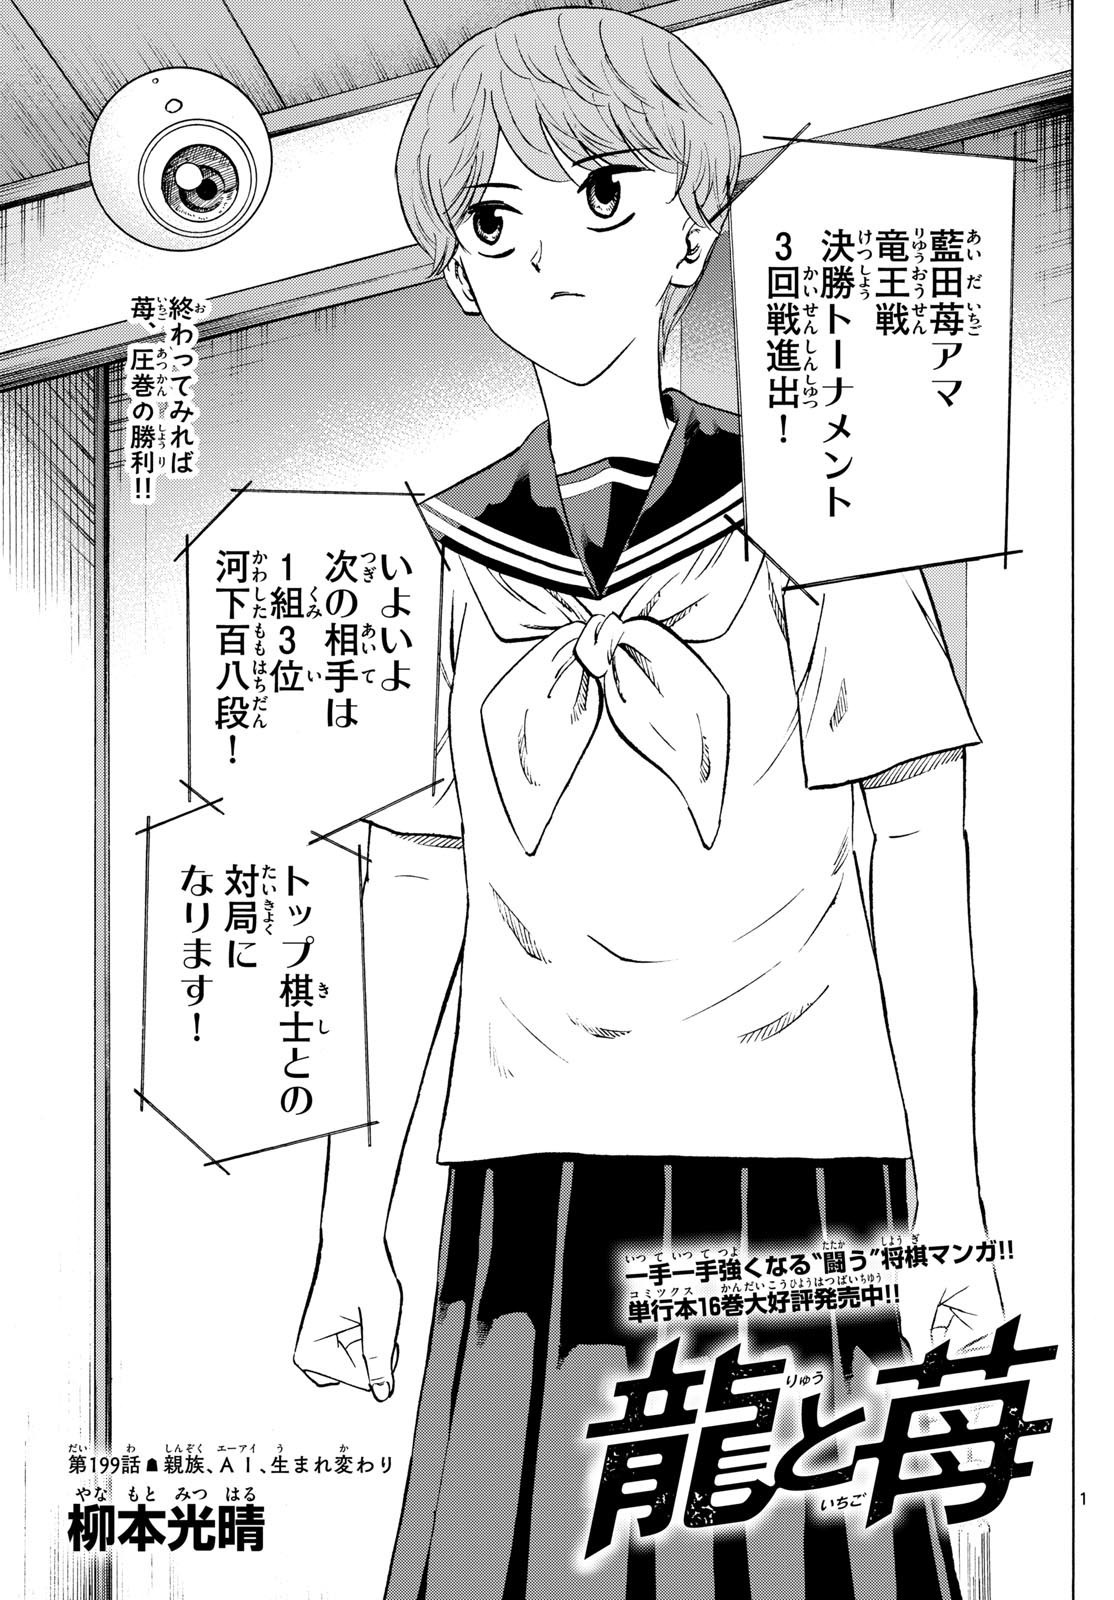 Tatsu to Ichigo - Chapter 199 - Page 1